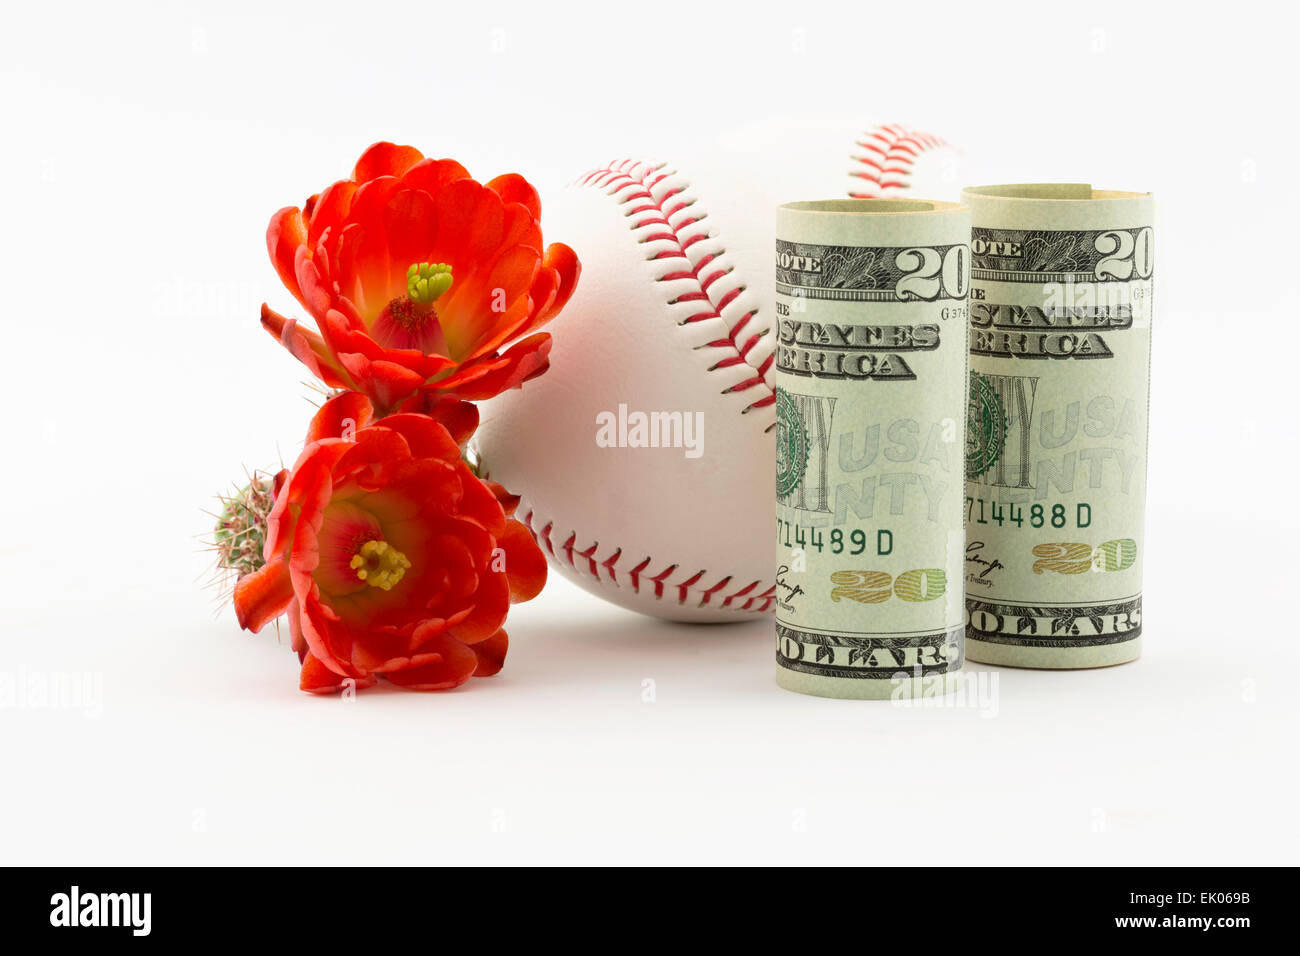 Zwei Baseballs bei amerikanischen Währung und roter Kaktus Blumen auf weißem Hintergrund platziert. Stockfoto